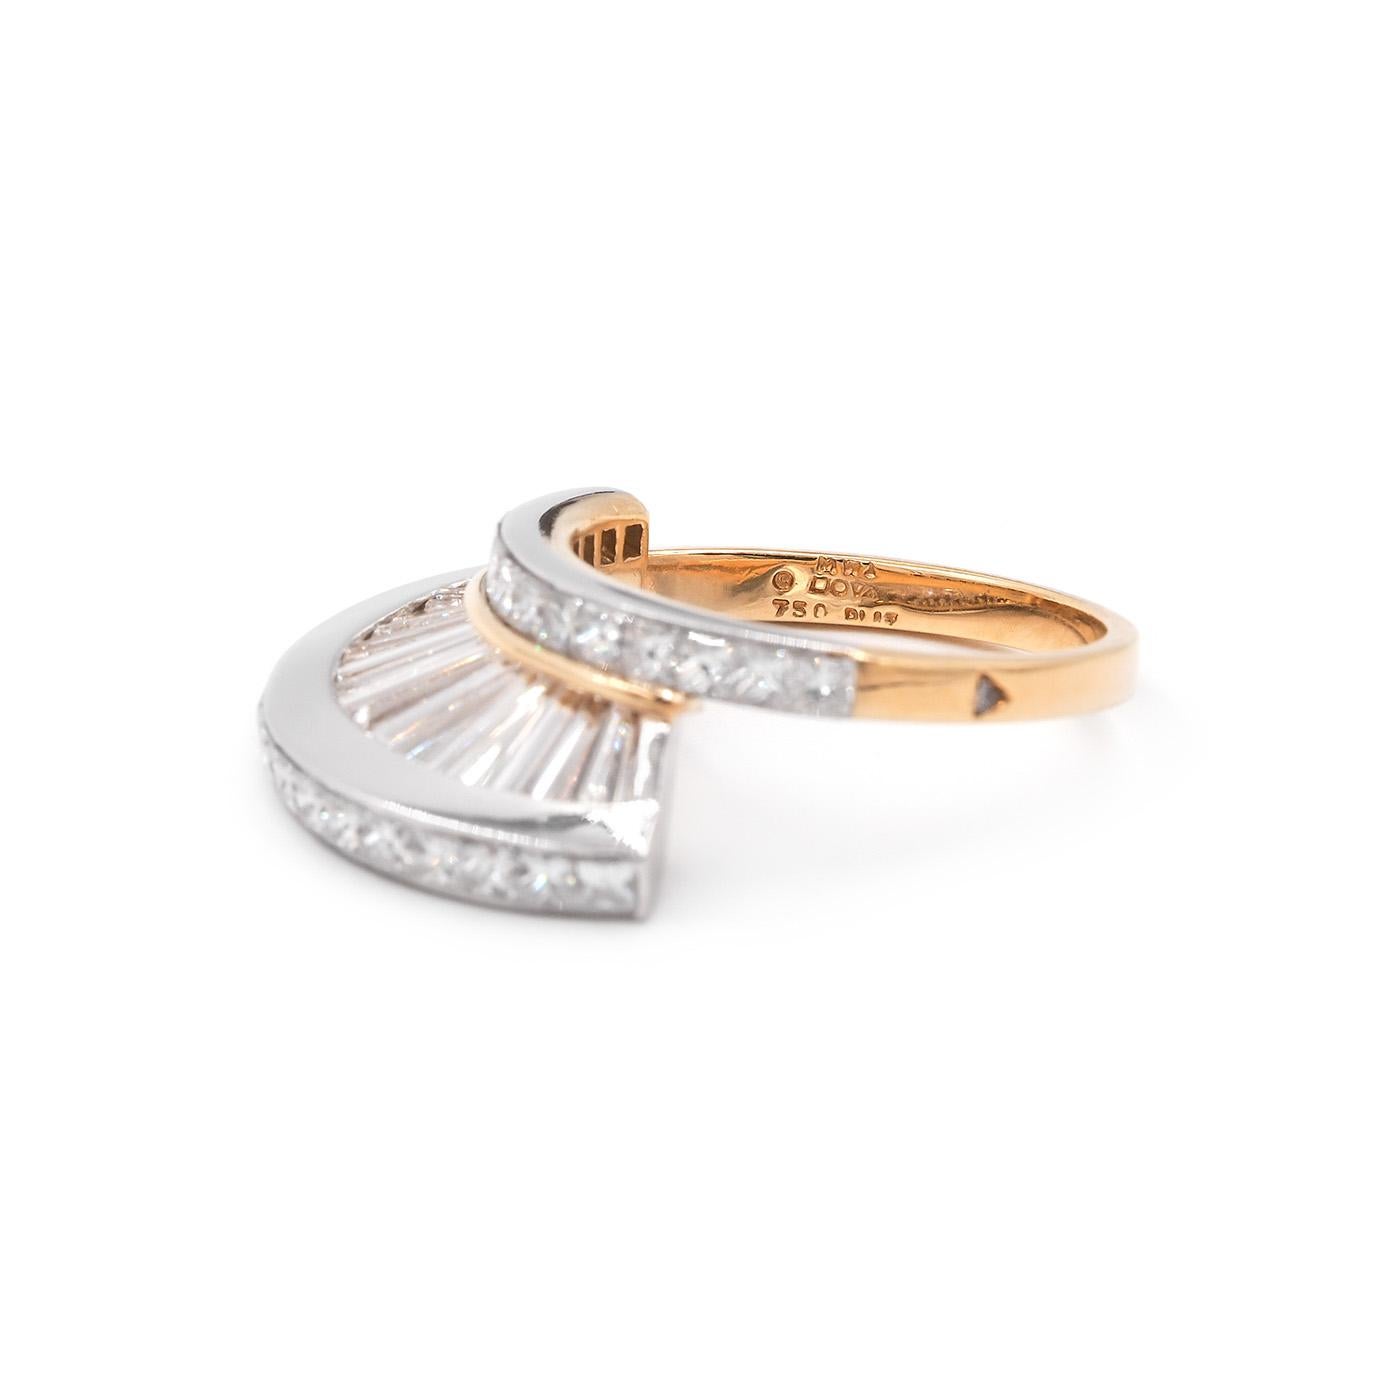 Vintage Baguette Cut & Princess Cut Diamond 'Fan' Ring Set by MWI Eloquence For Sale 6